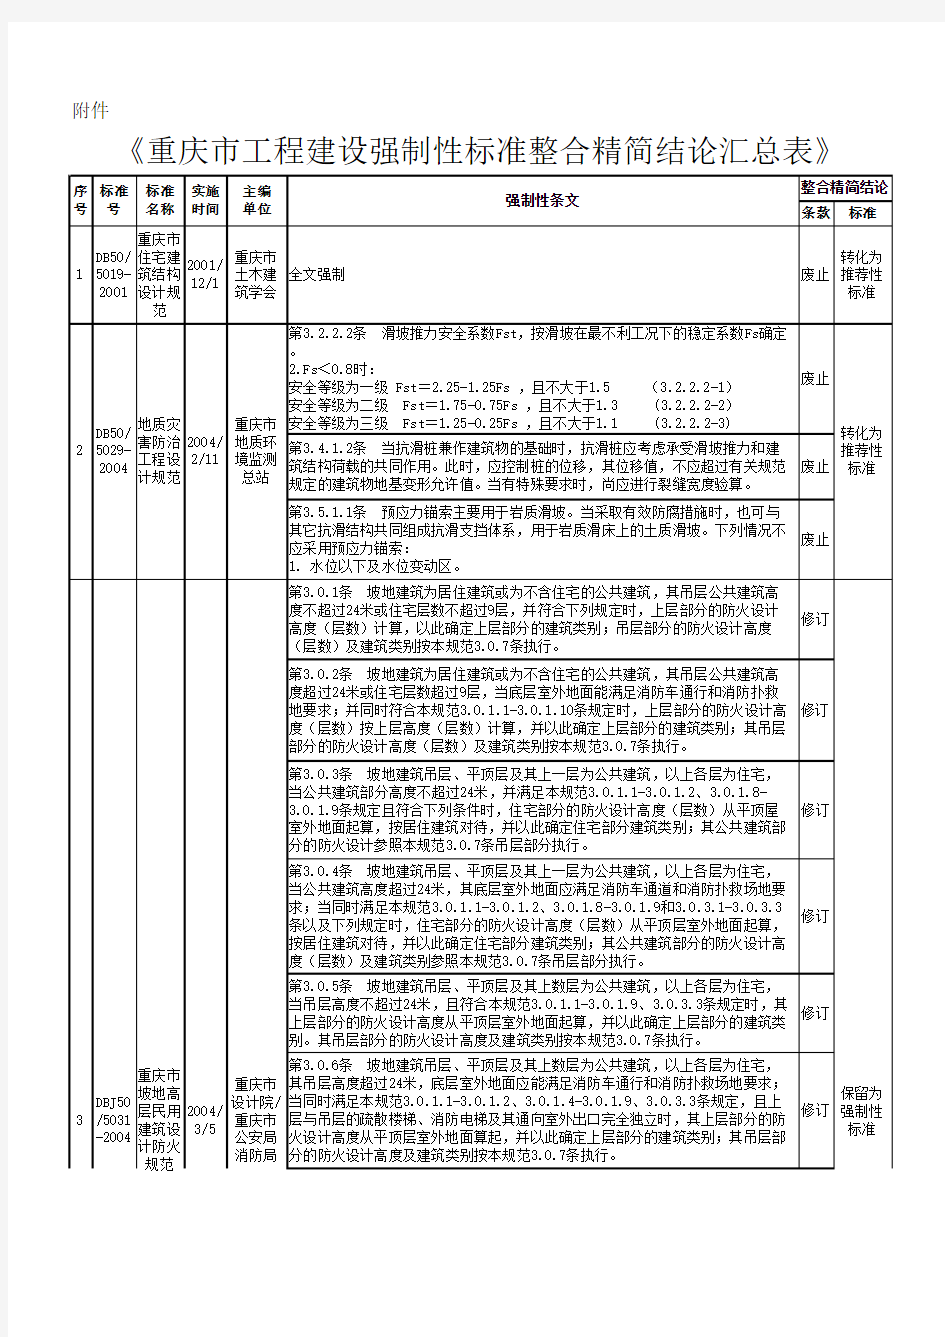 《重庆市工程建设强制性标准整合精简评估汇总表》161124(终)